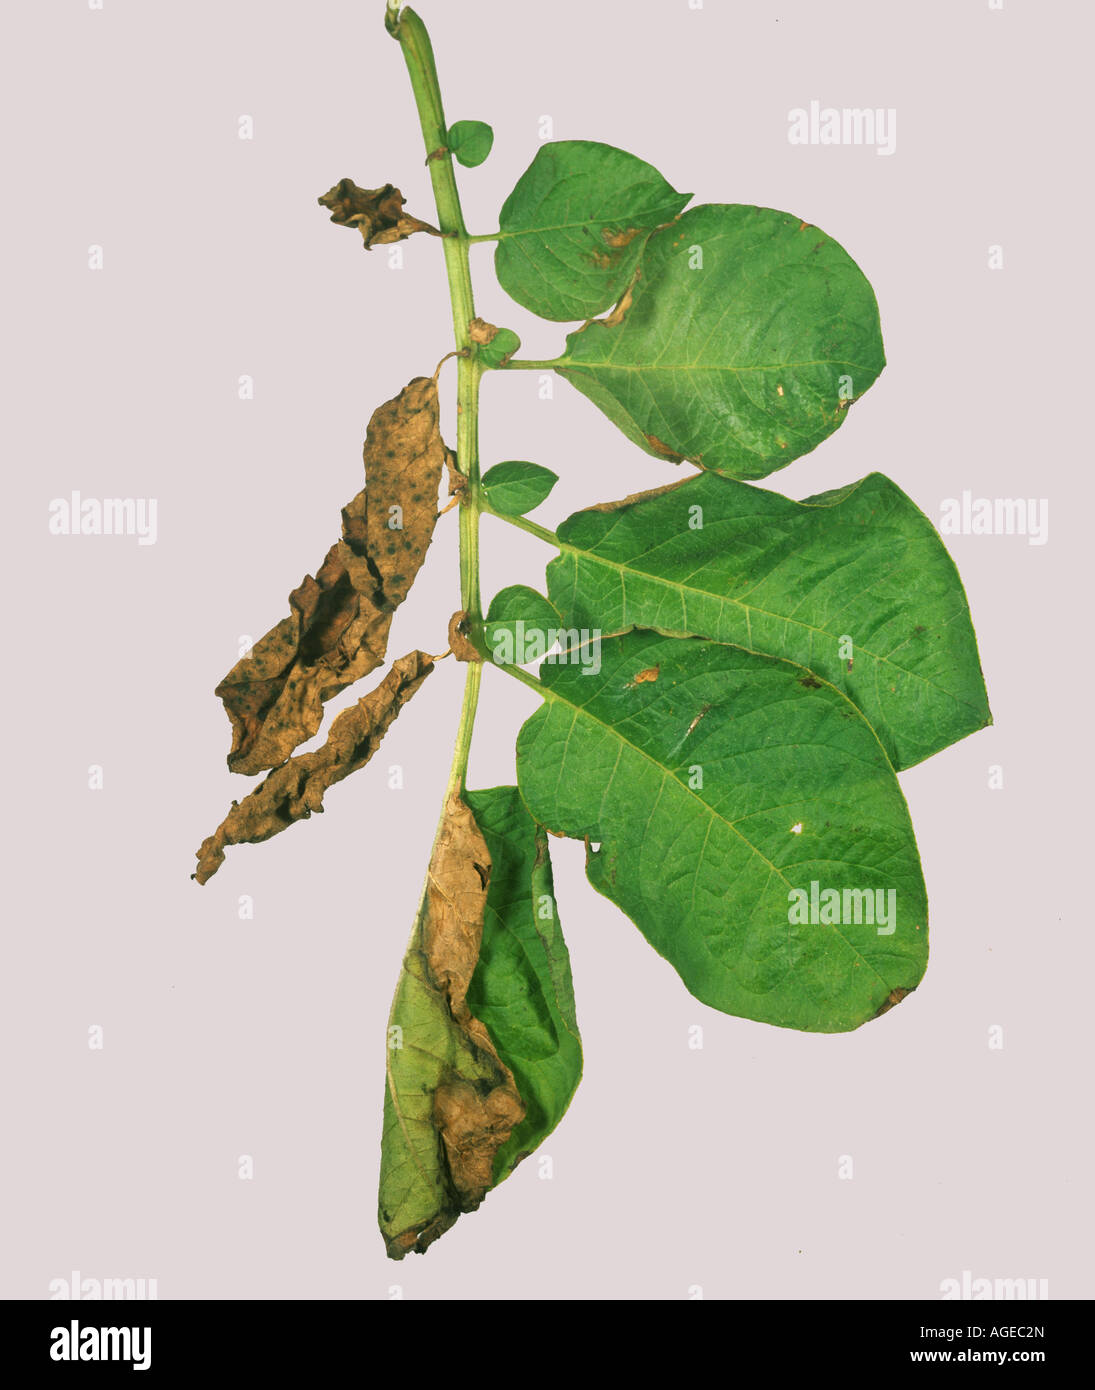 Verticillium albo atrum hi-res stock photography and images - Alamy